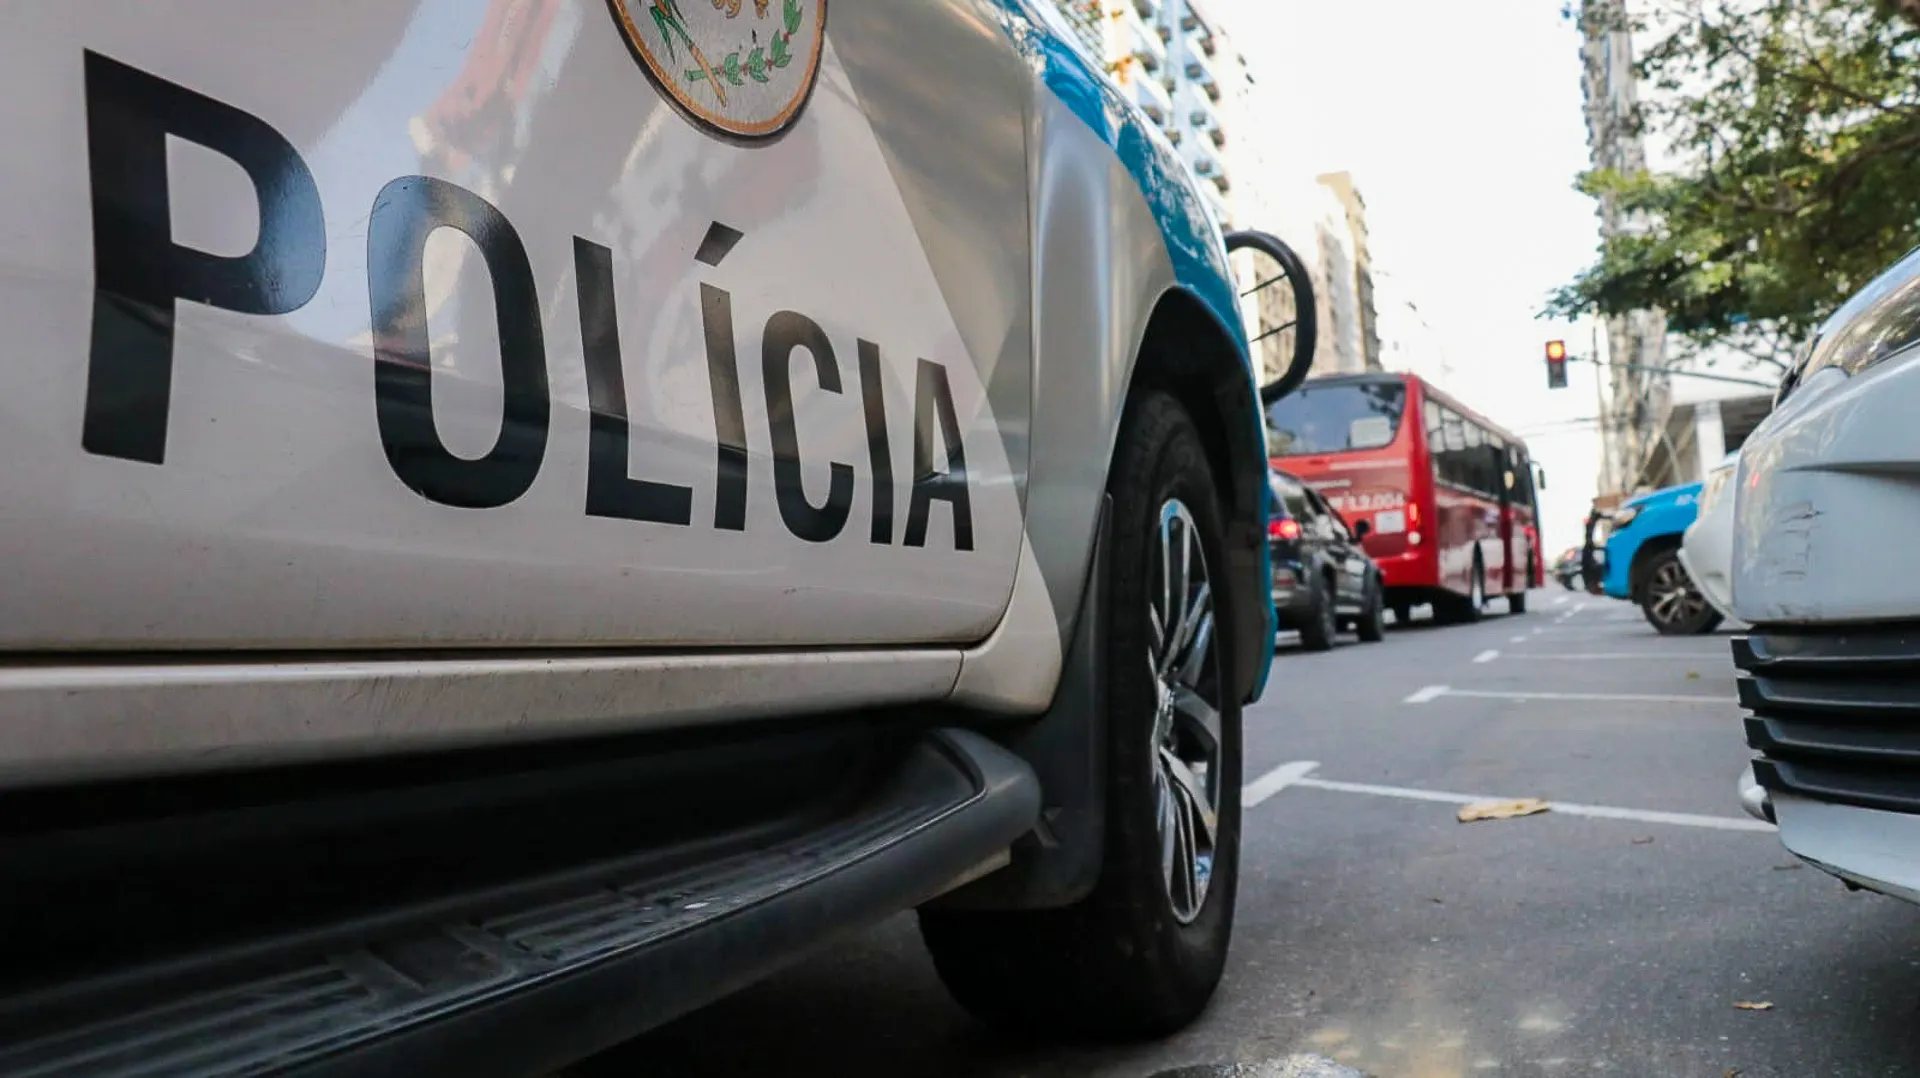 Policiais do 12°BPM (Niterói) foram acionados para prestar reforço